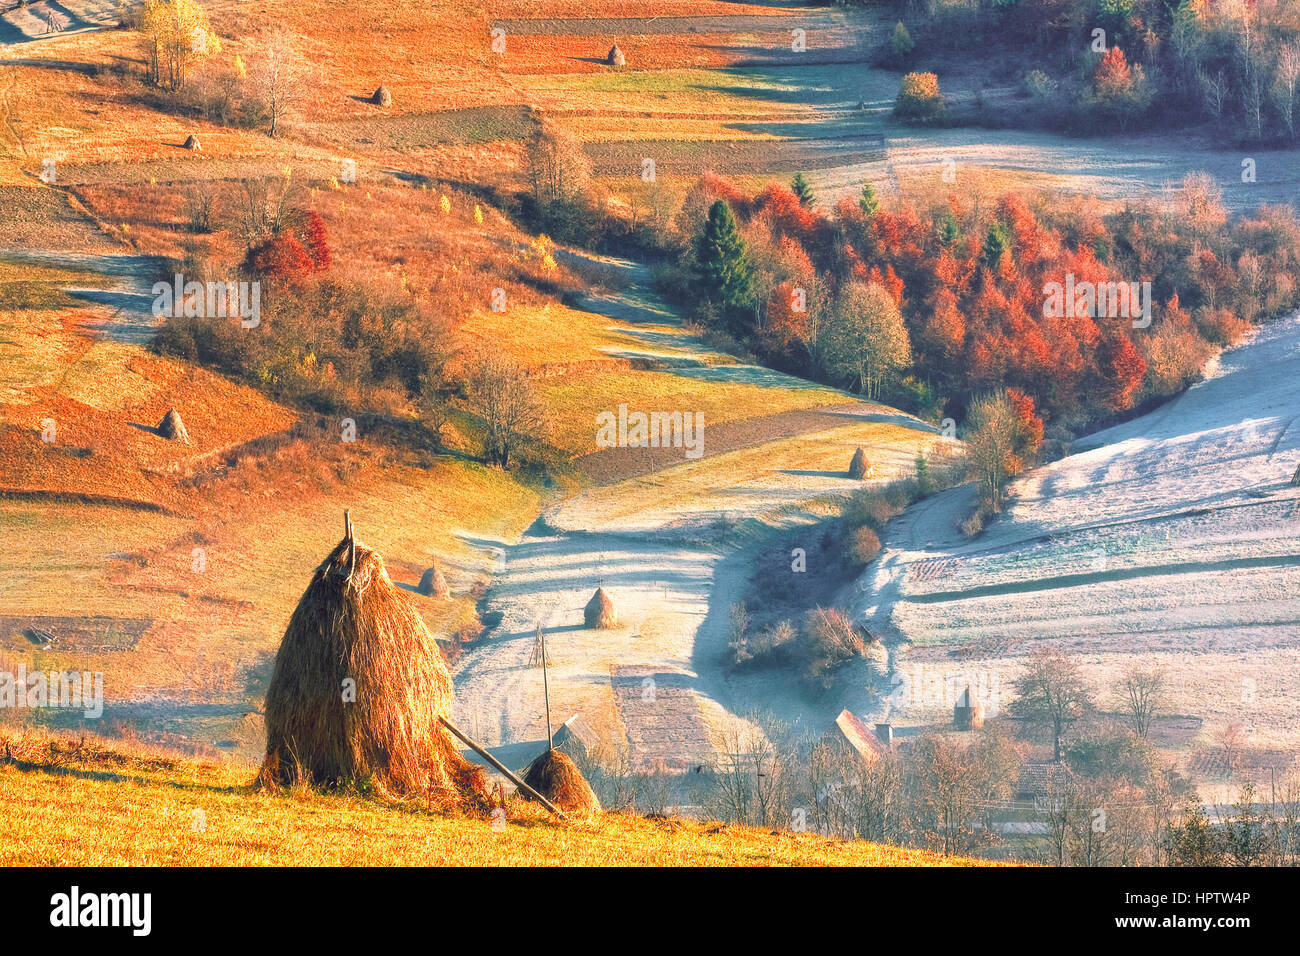 Panorama of autumn orange mountains valley Stock Photo